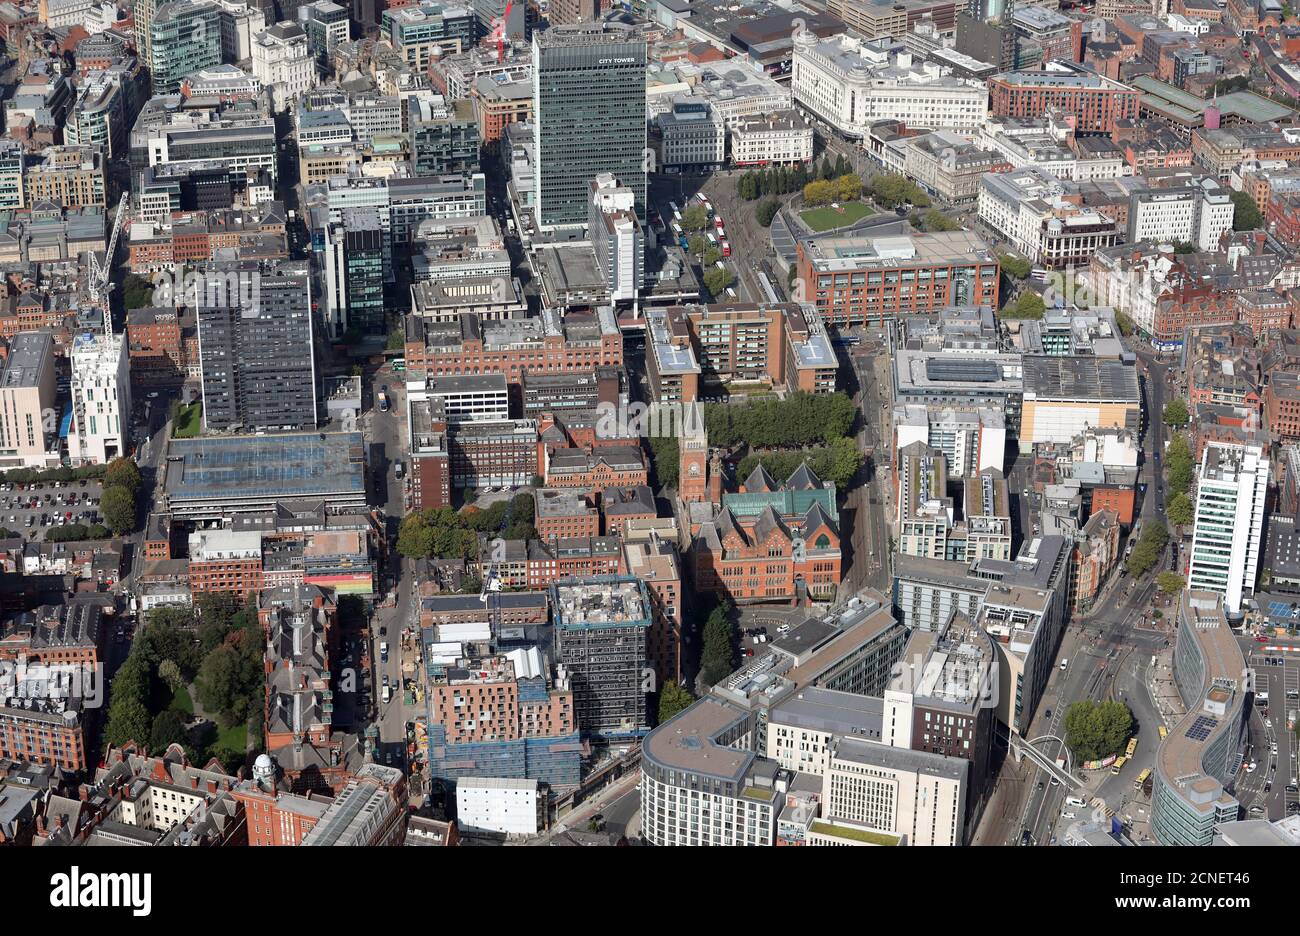 Vue aérienne du centre-ville de Manchester depuis le sud-est en regardant Chorlton Street vers City Tower et Piccadilly Gardens. Septembre 2020 Banque D'Images